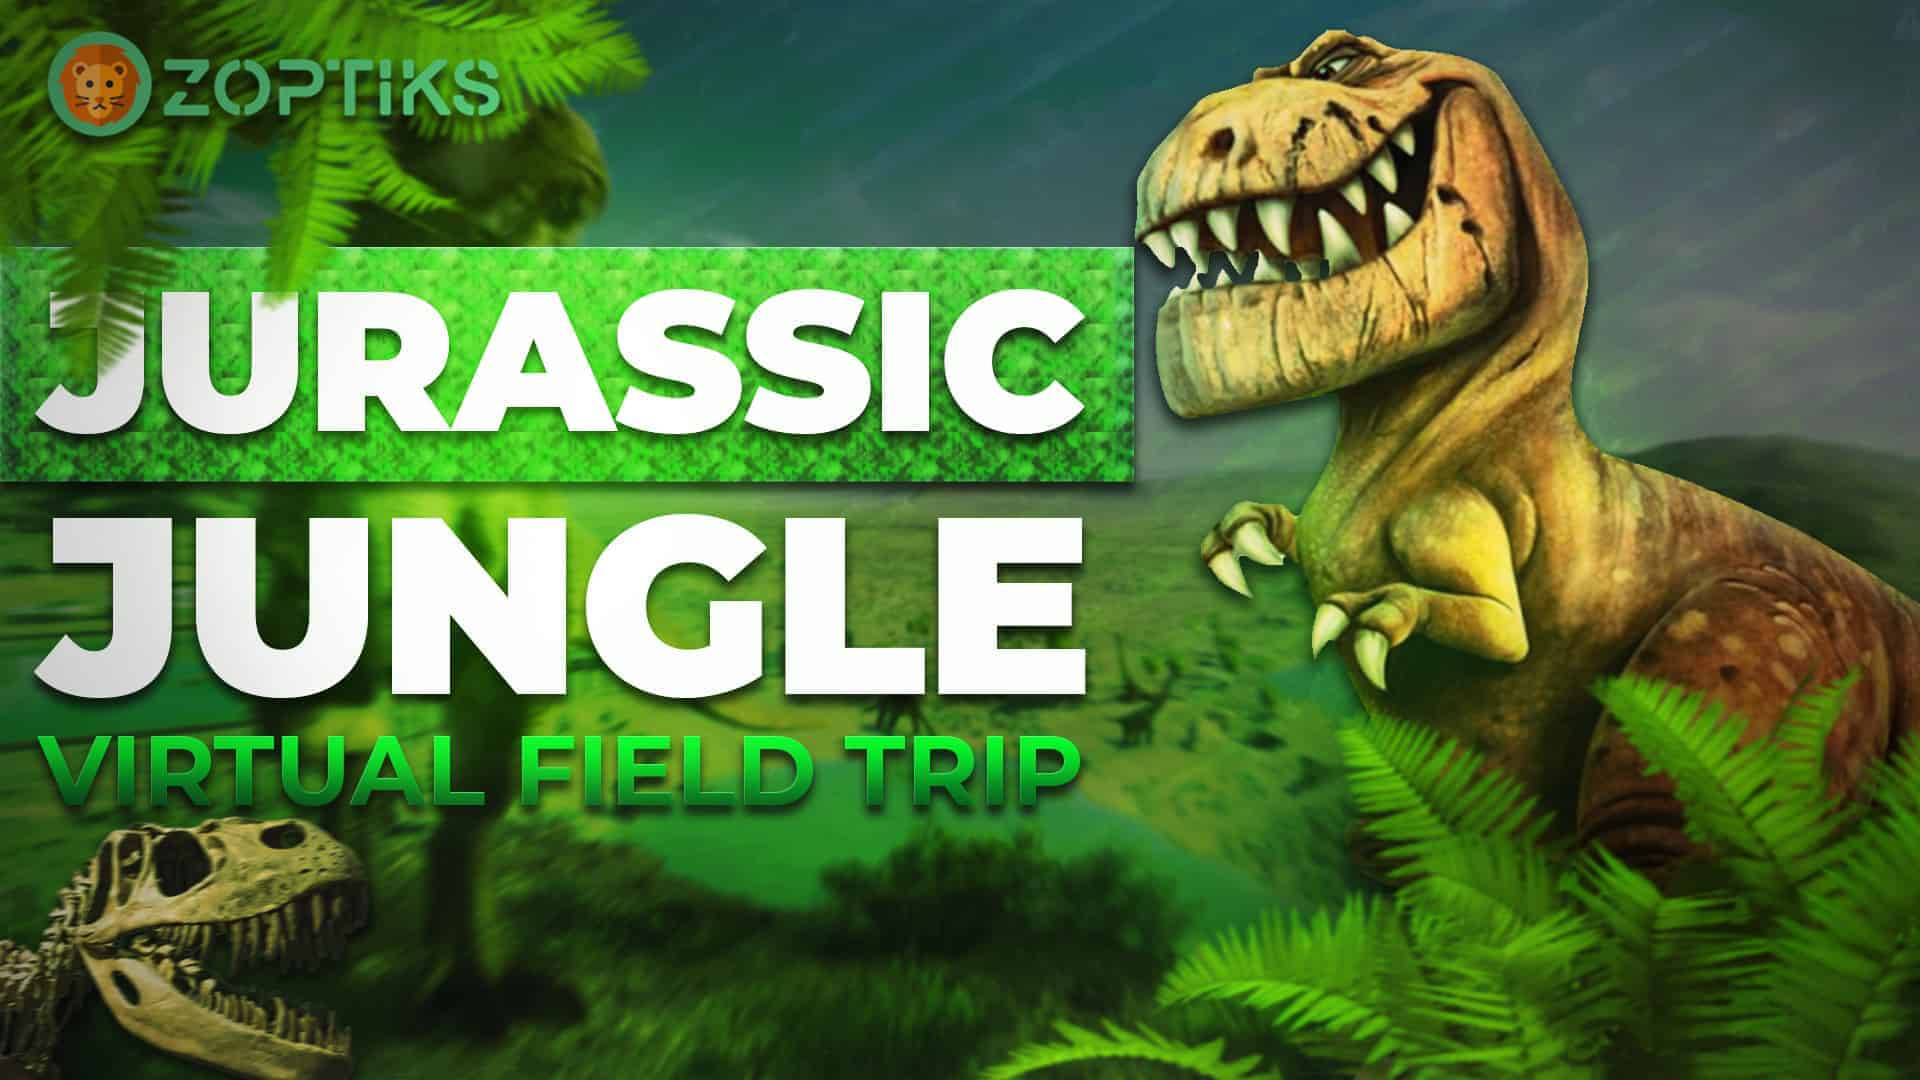 Jurassic jungle virtual field trip